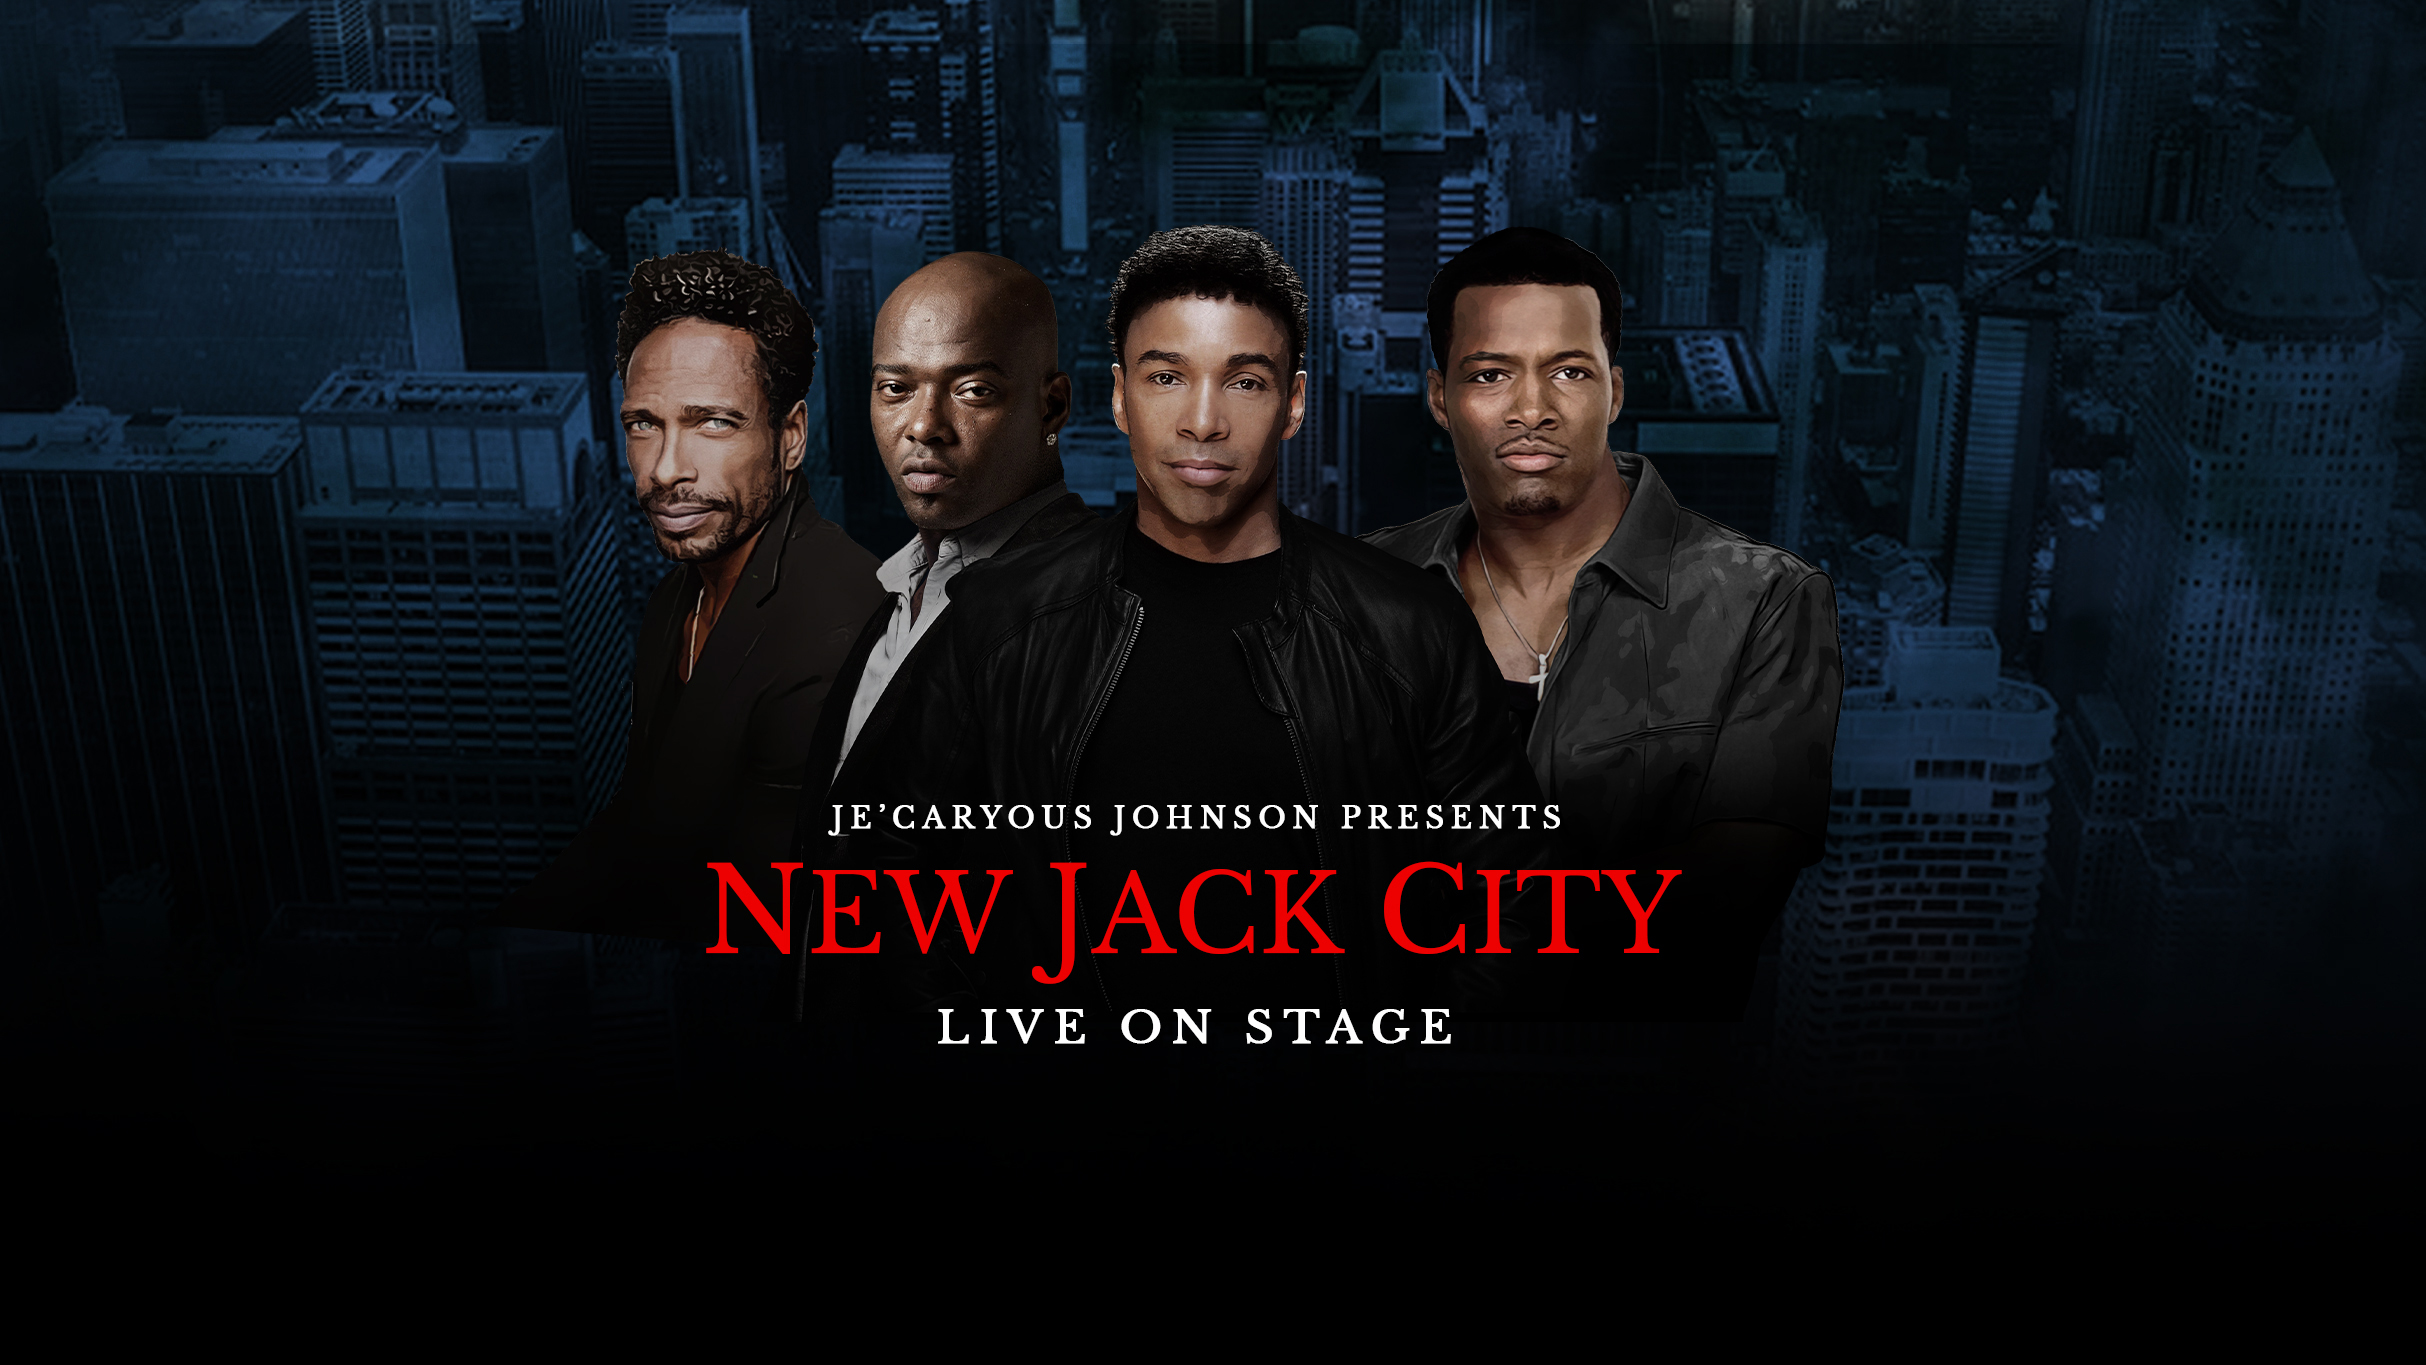 Je'caryous Johnson Presents “New Jack City”